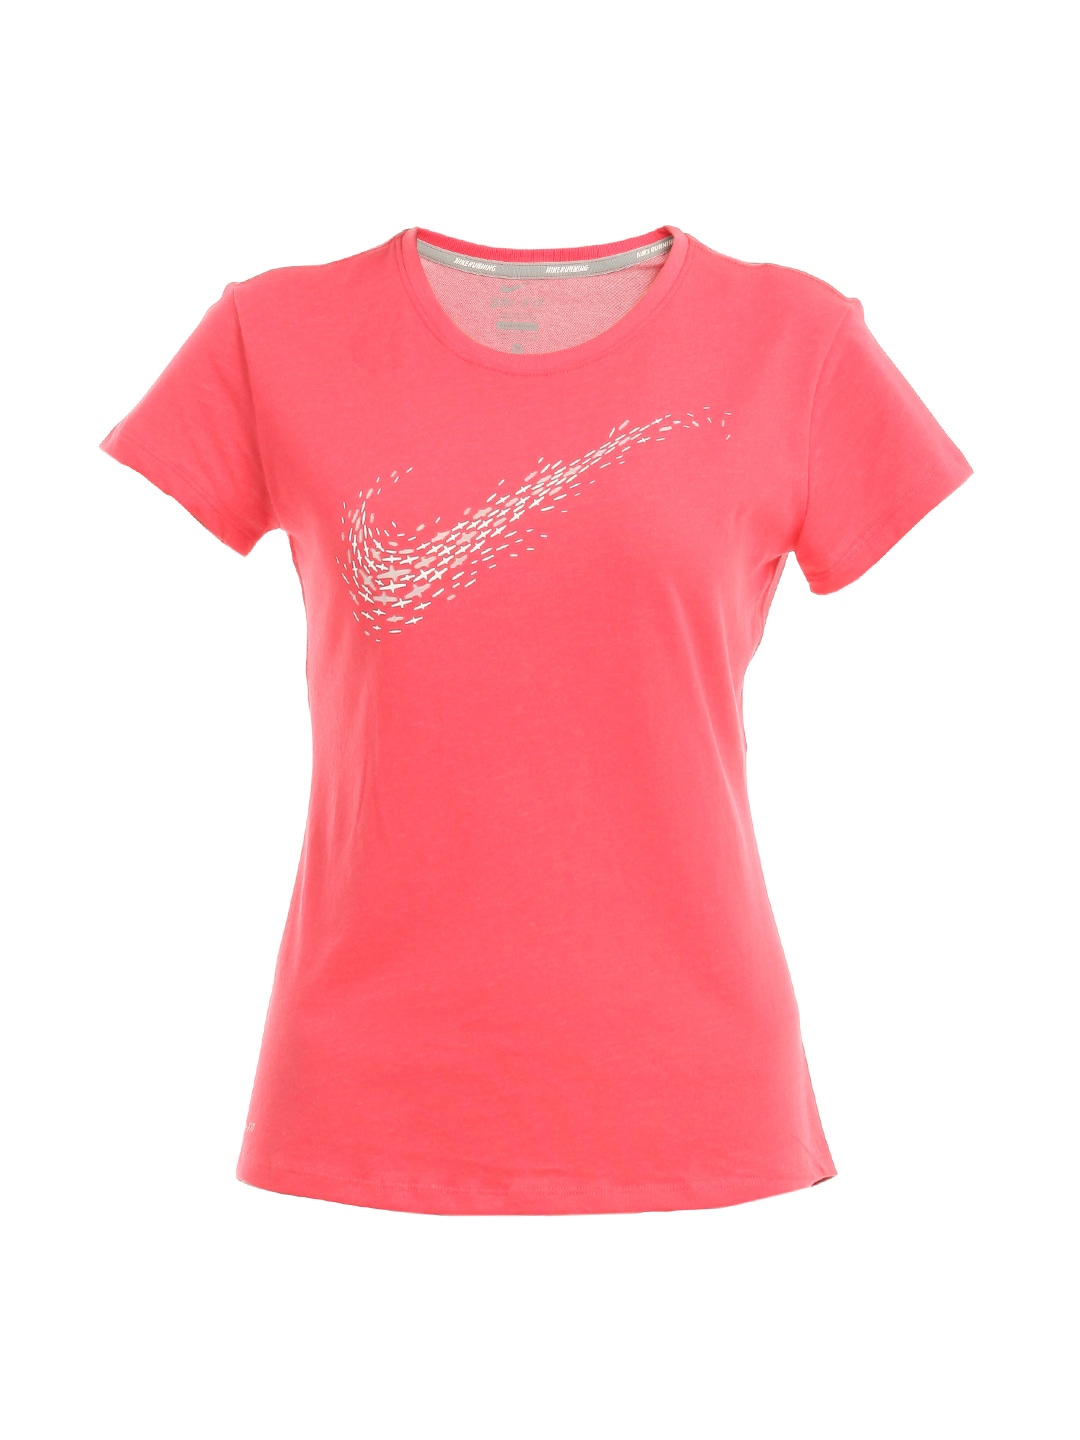 Nike Women Pink T-shirt